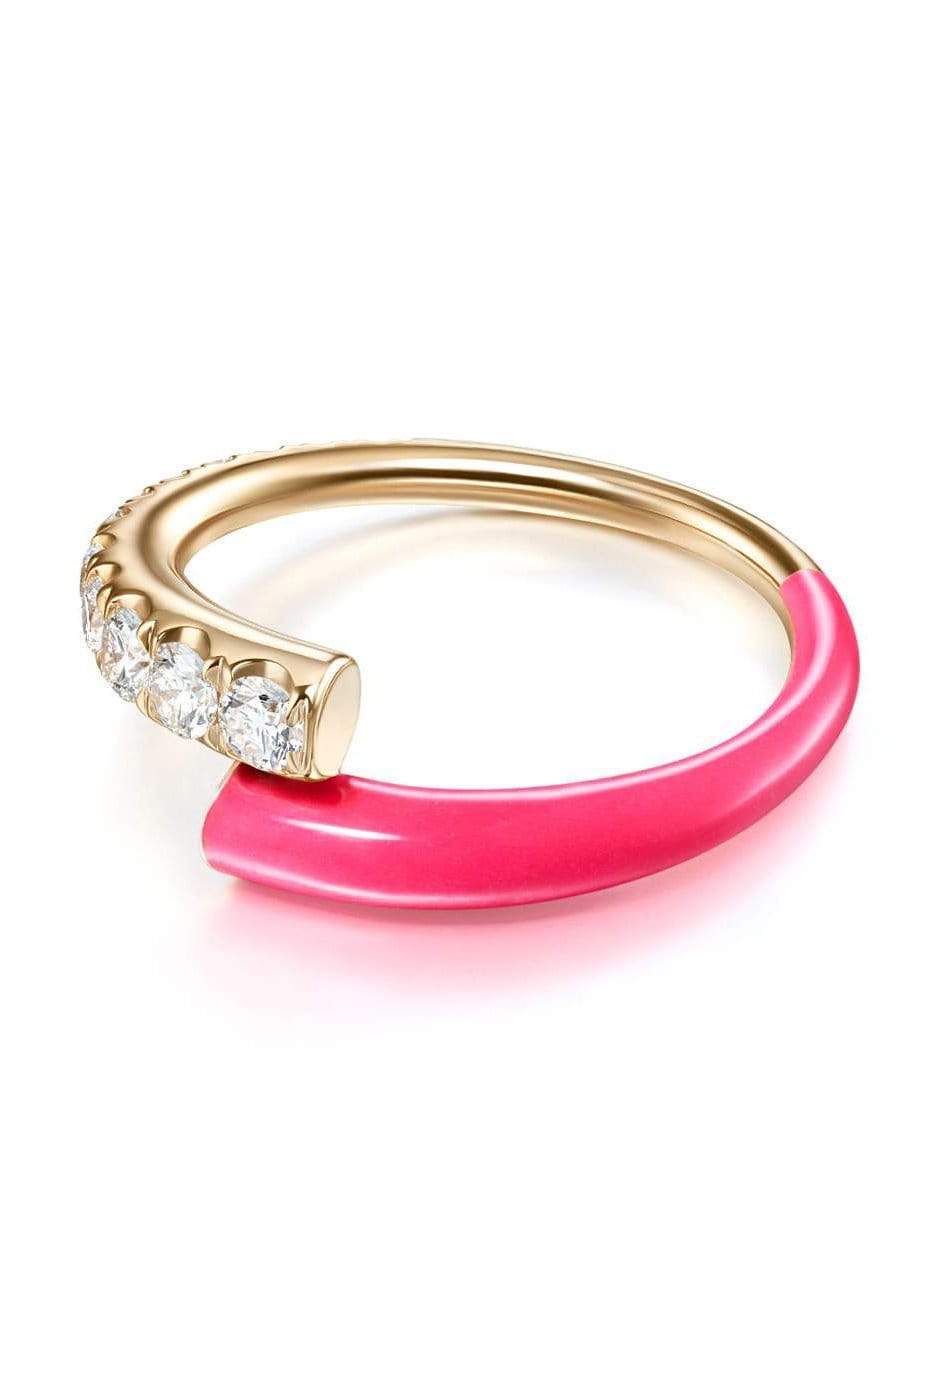 MELISSA KAYE-Neon Pink Lola Ring-ROSE GOLD